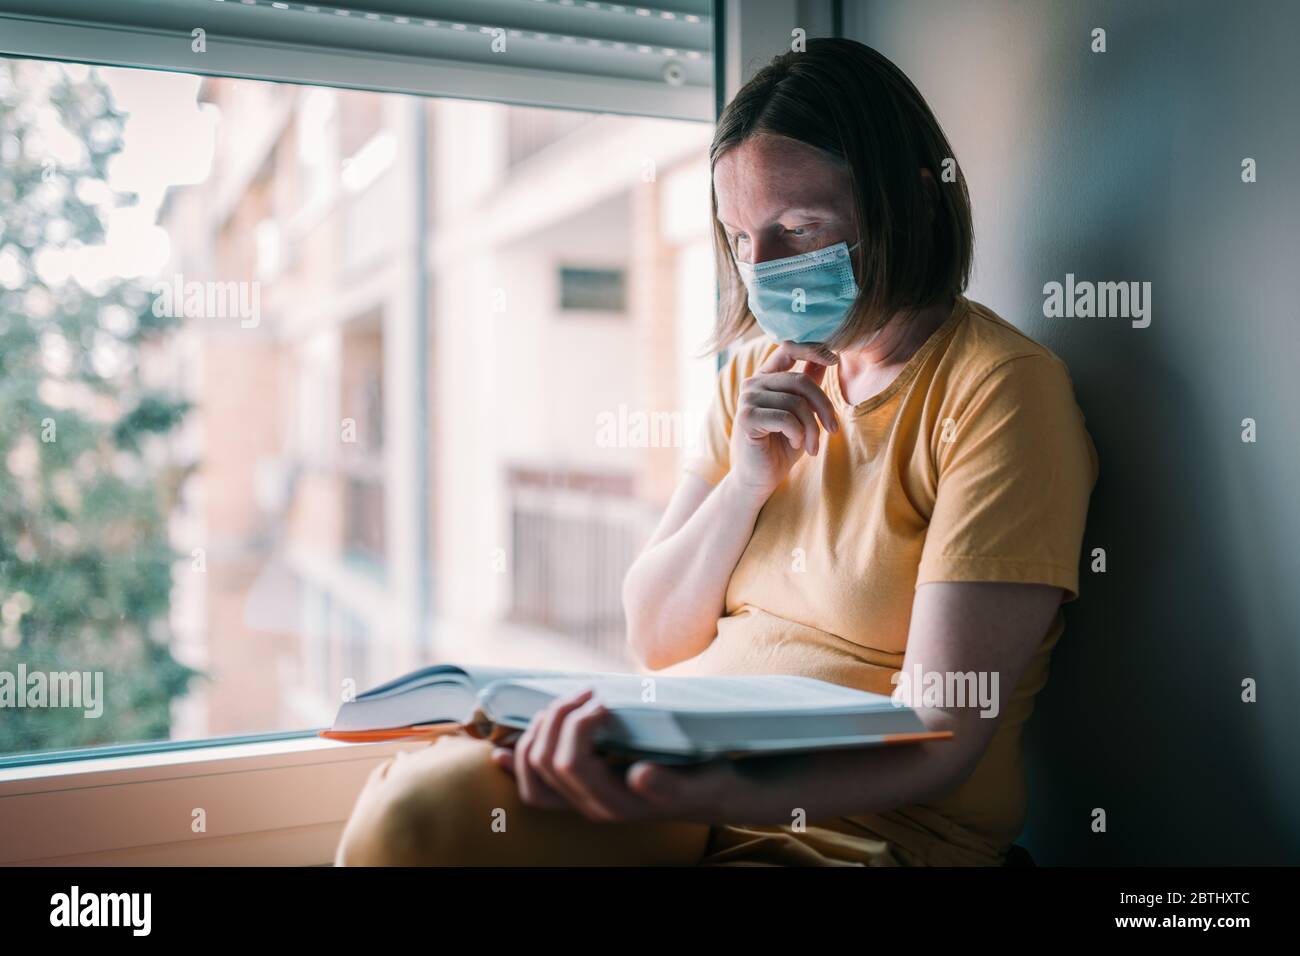 Mujer en el libro de lectura de auto-aislamiento por la ventana. Mujer con mascarilla respiratoria protectora facial en cuarentena domiciliaria. Foto de stock